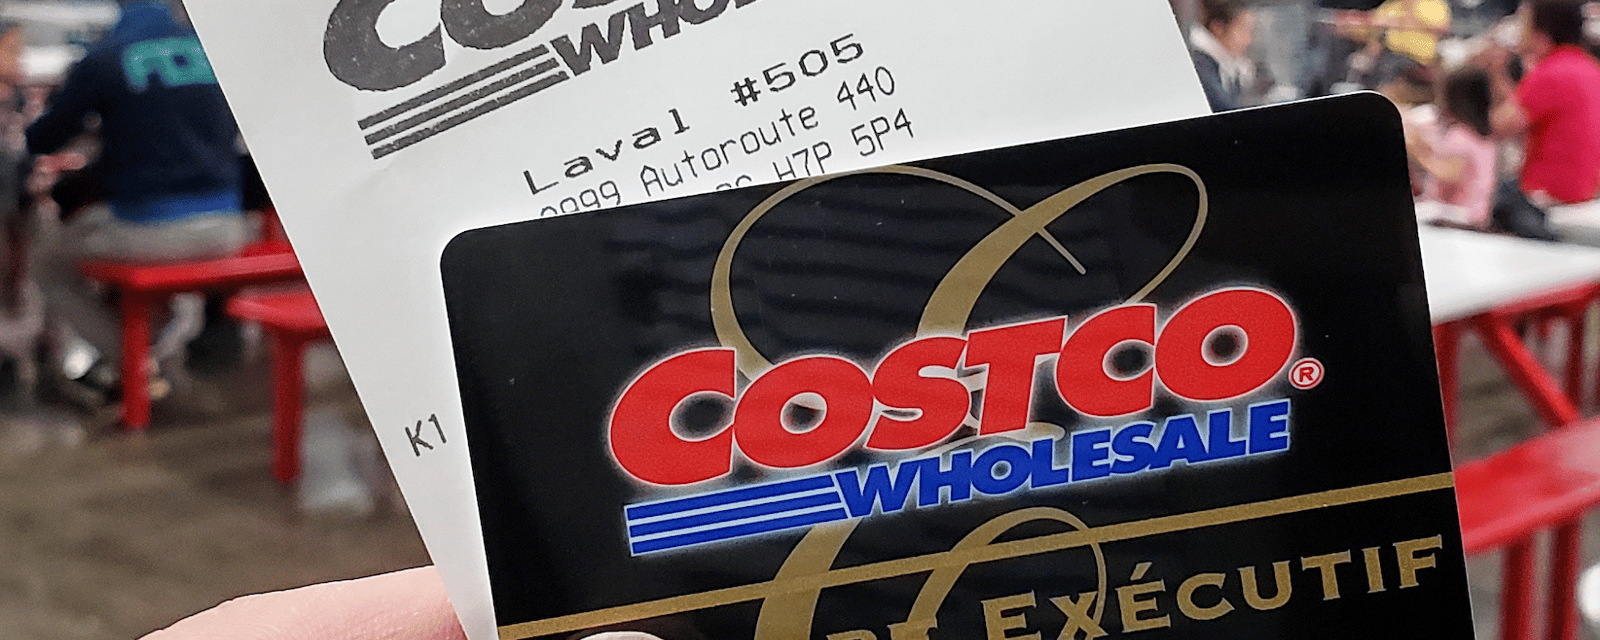 Costco présente ses excuses et admet que des employés ont agit de façon inappropriée 